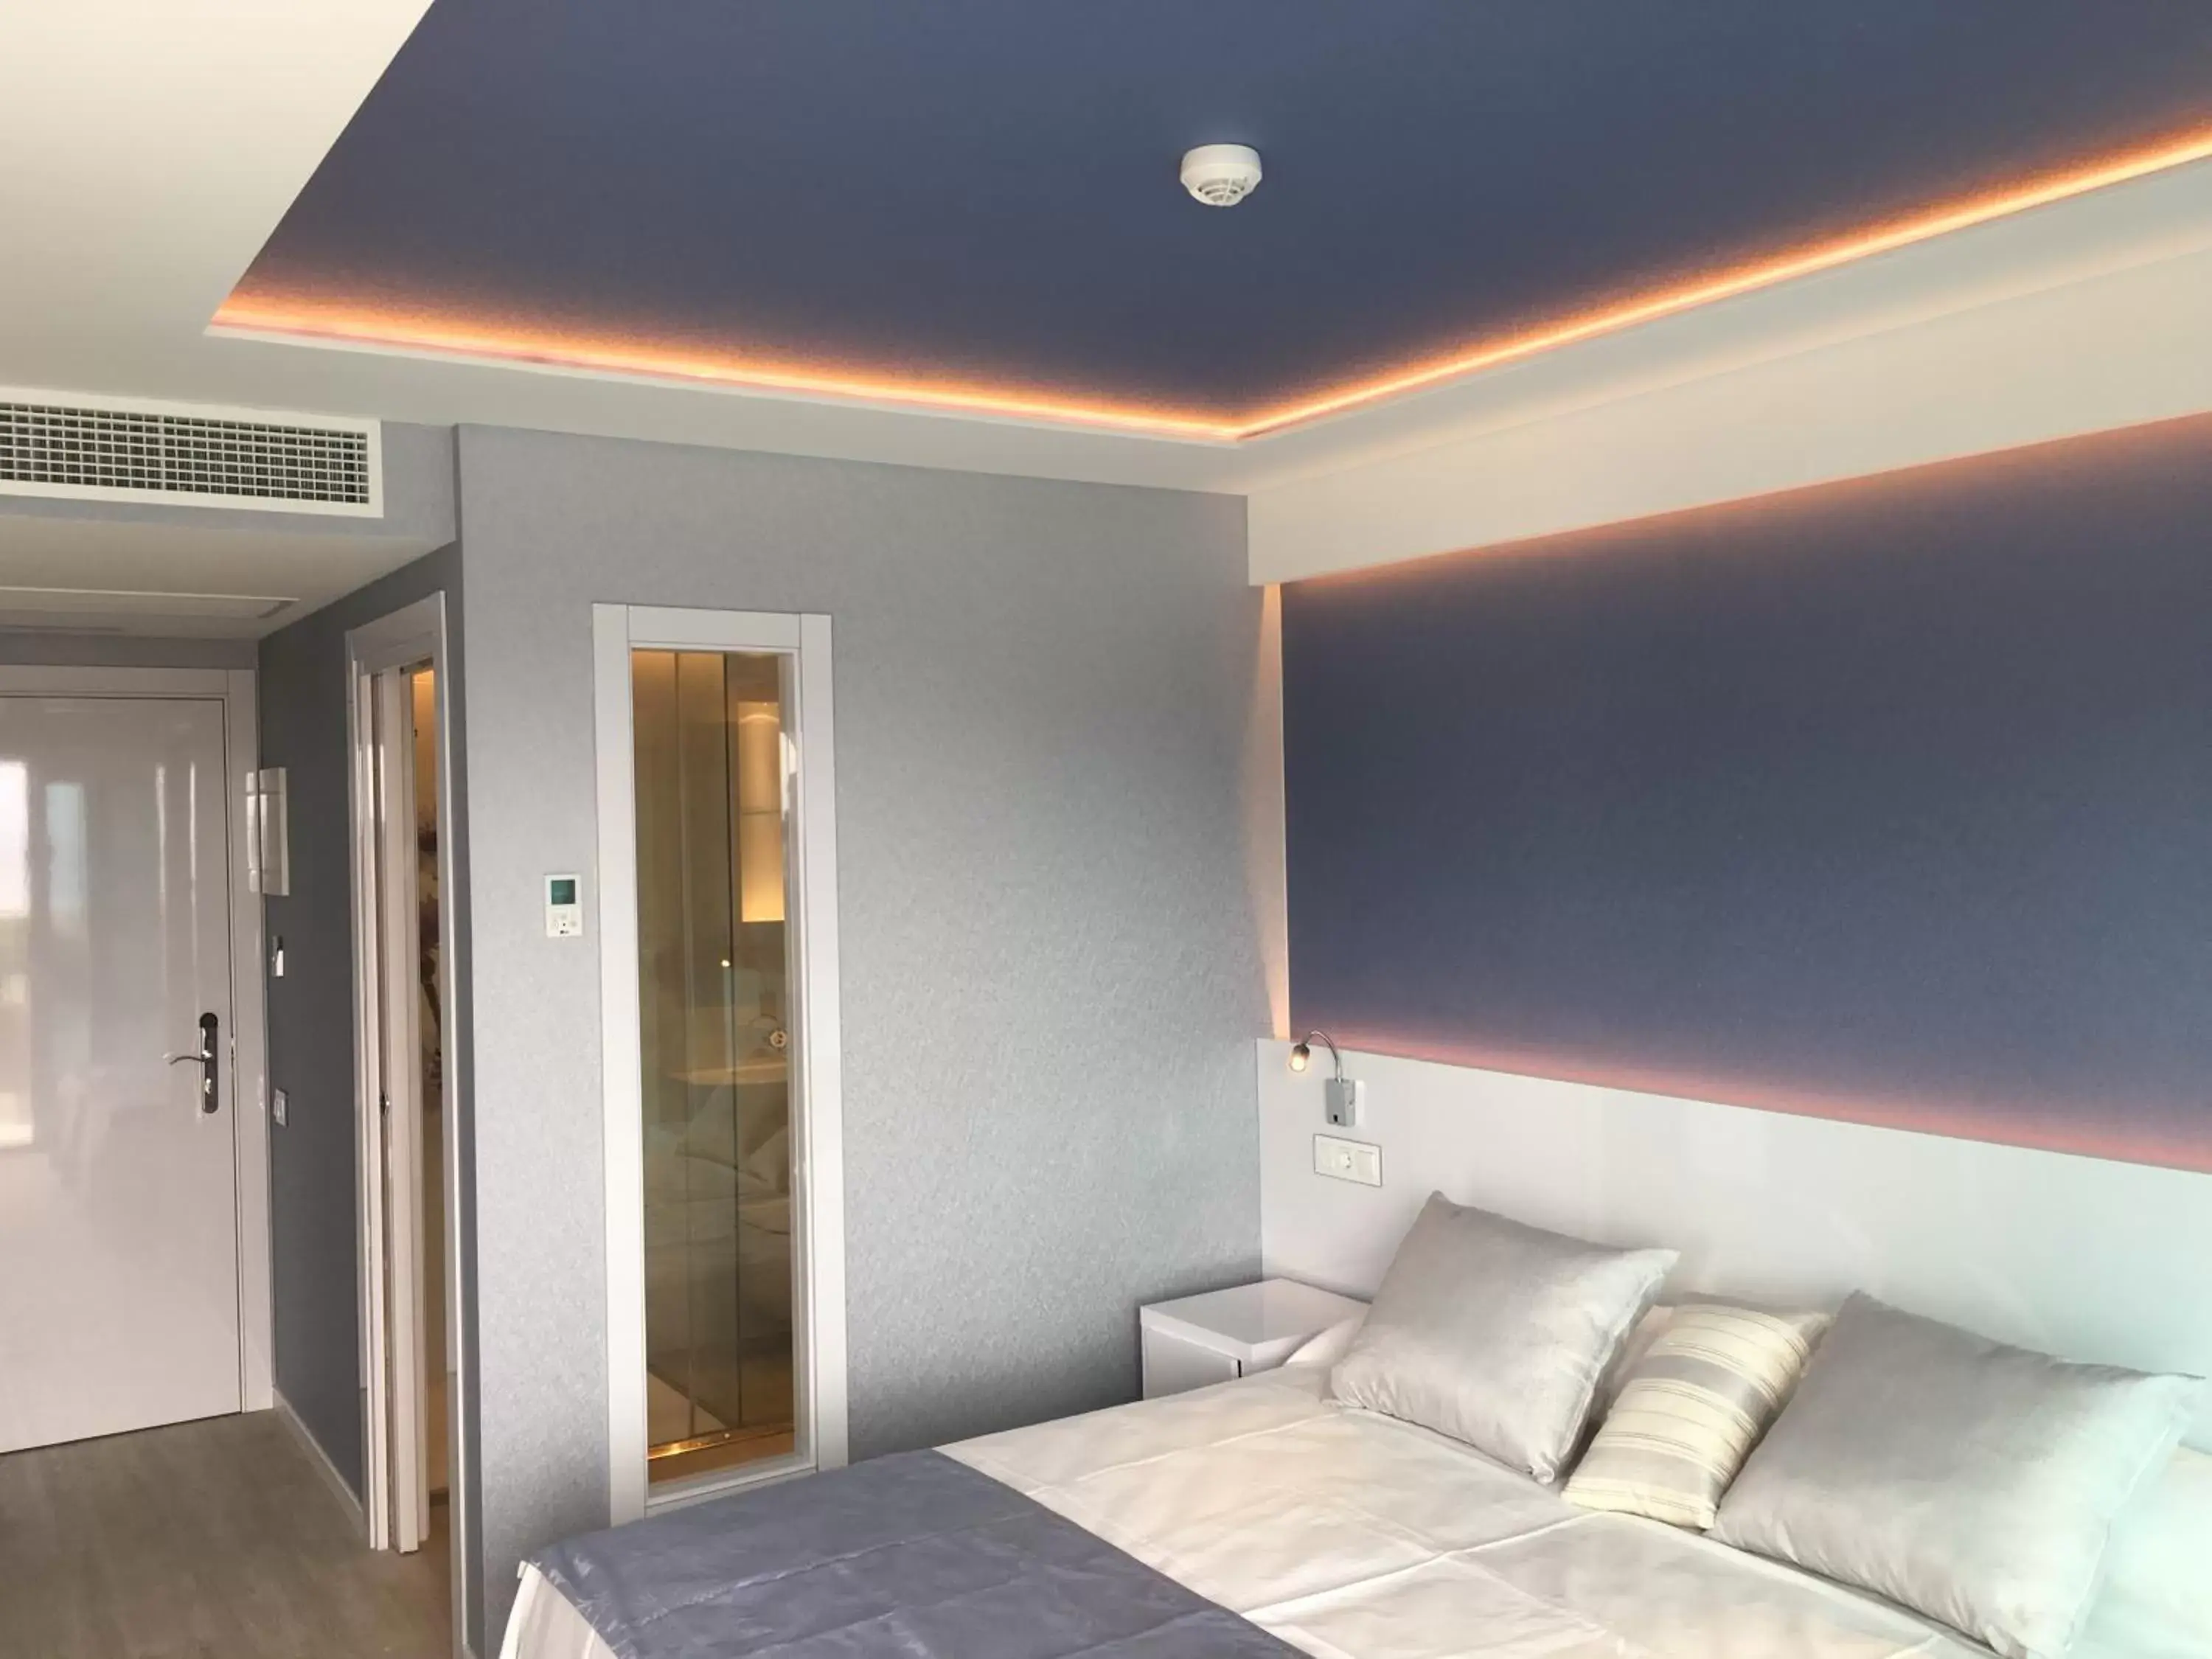 Bed, Room Photo in Masd Mediterraneo Hotel Apartamentos Spa